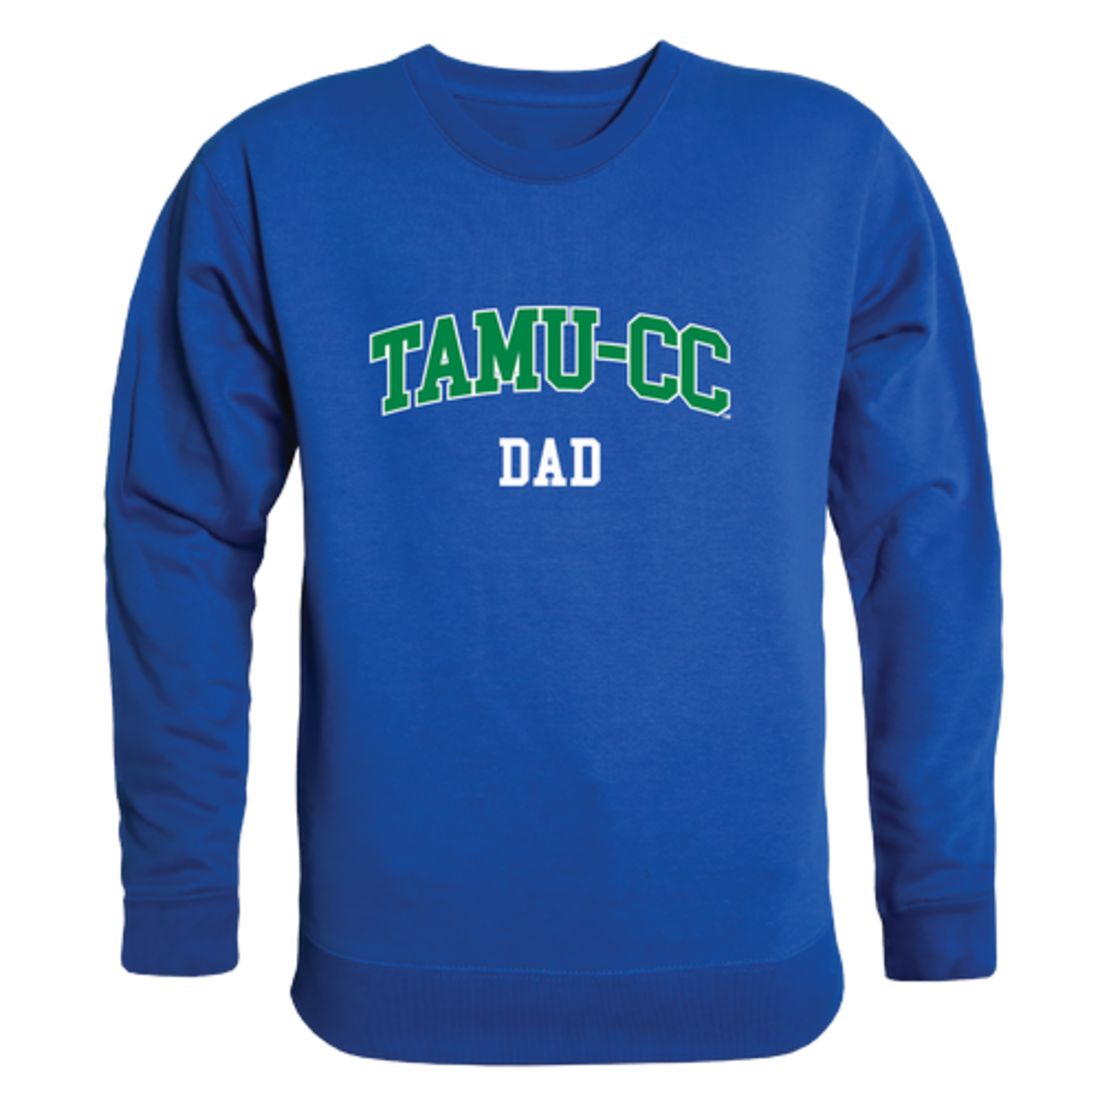 TAMUCC Texas A&M University Corpus Christi Islanders Dad Fleece Crewneck Pullover Sweatshirt Heather Grey-Campus-Wardrobe